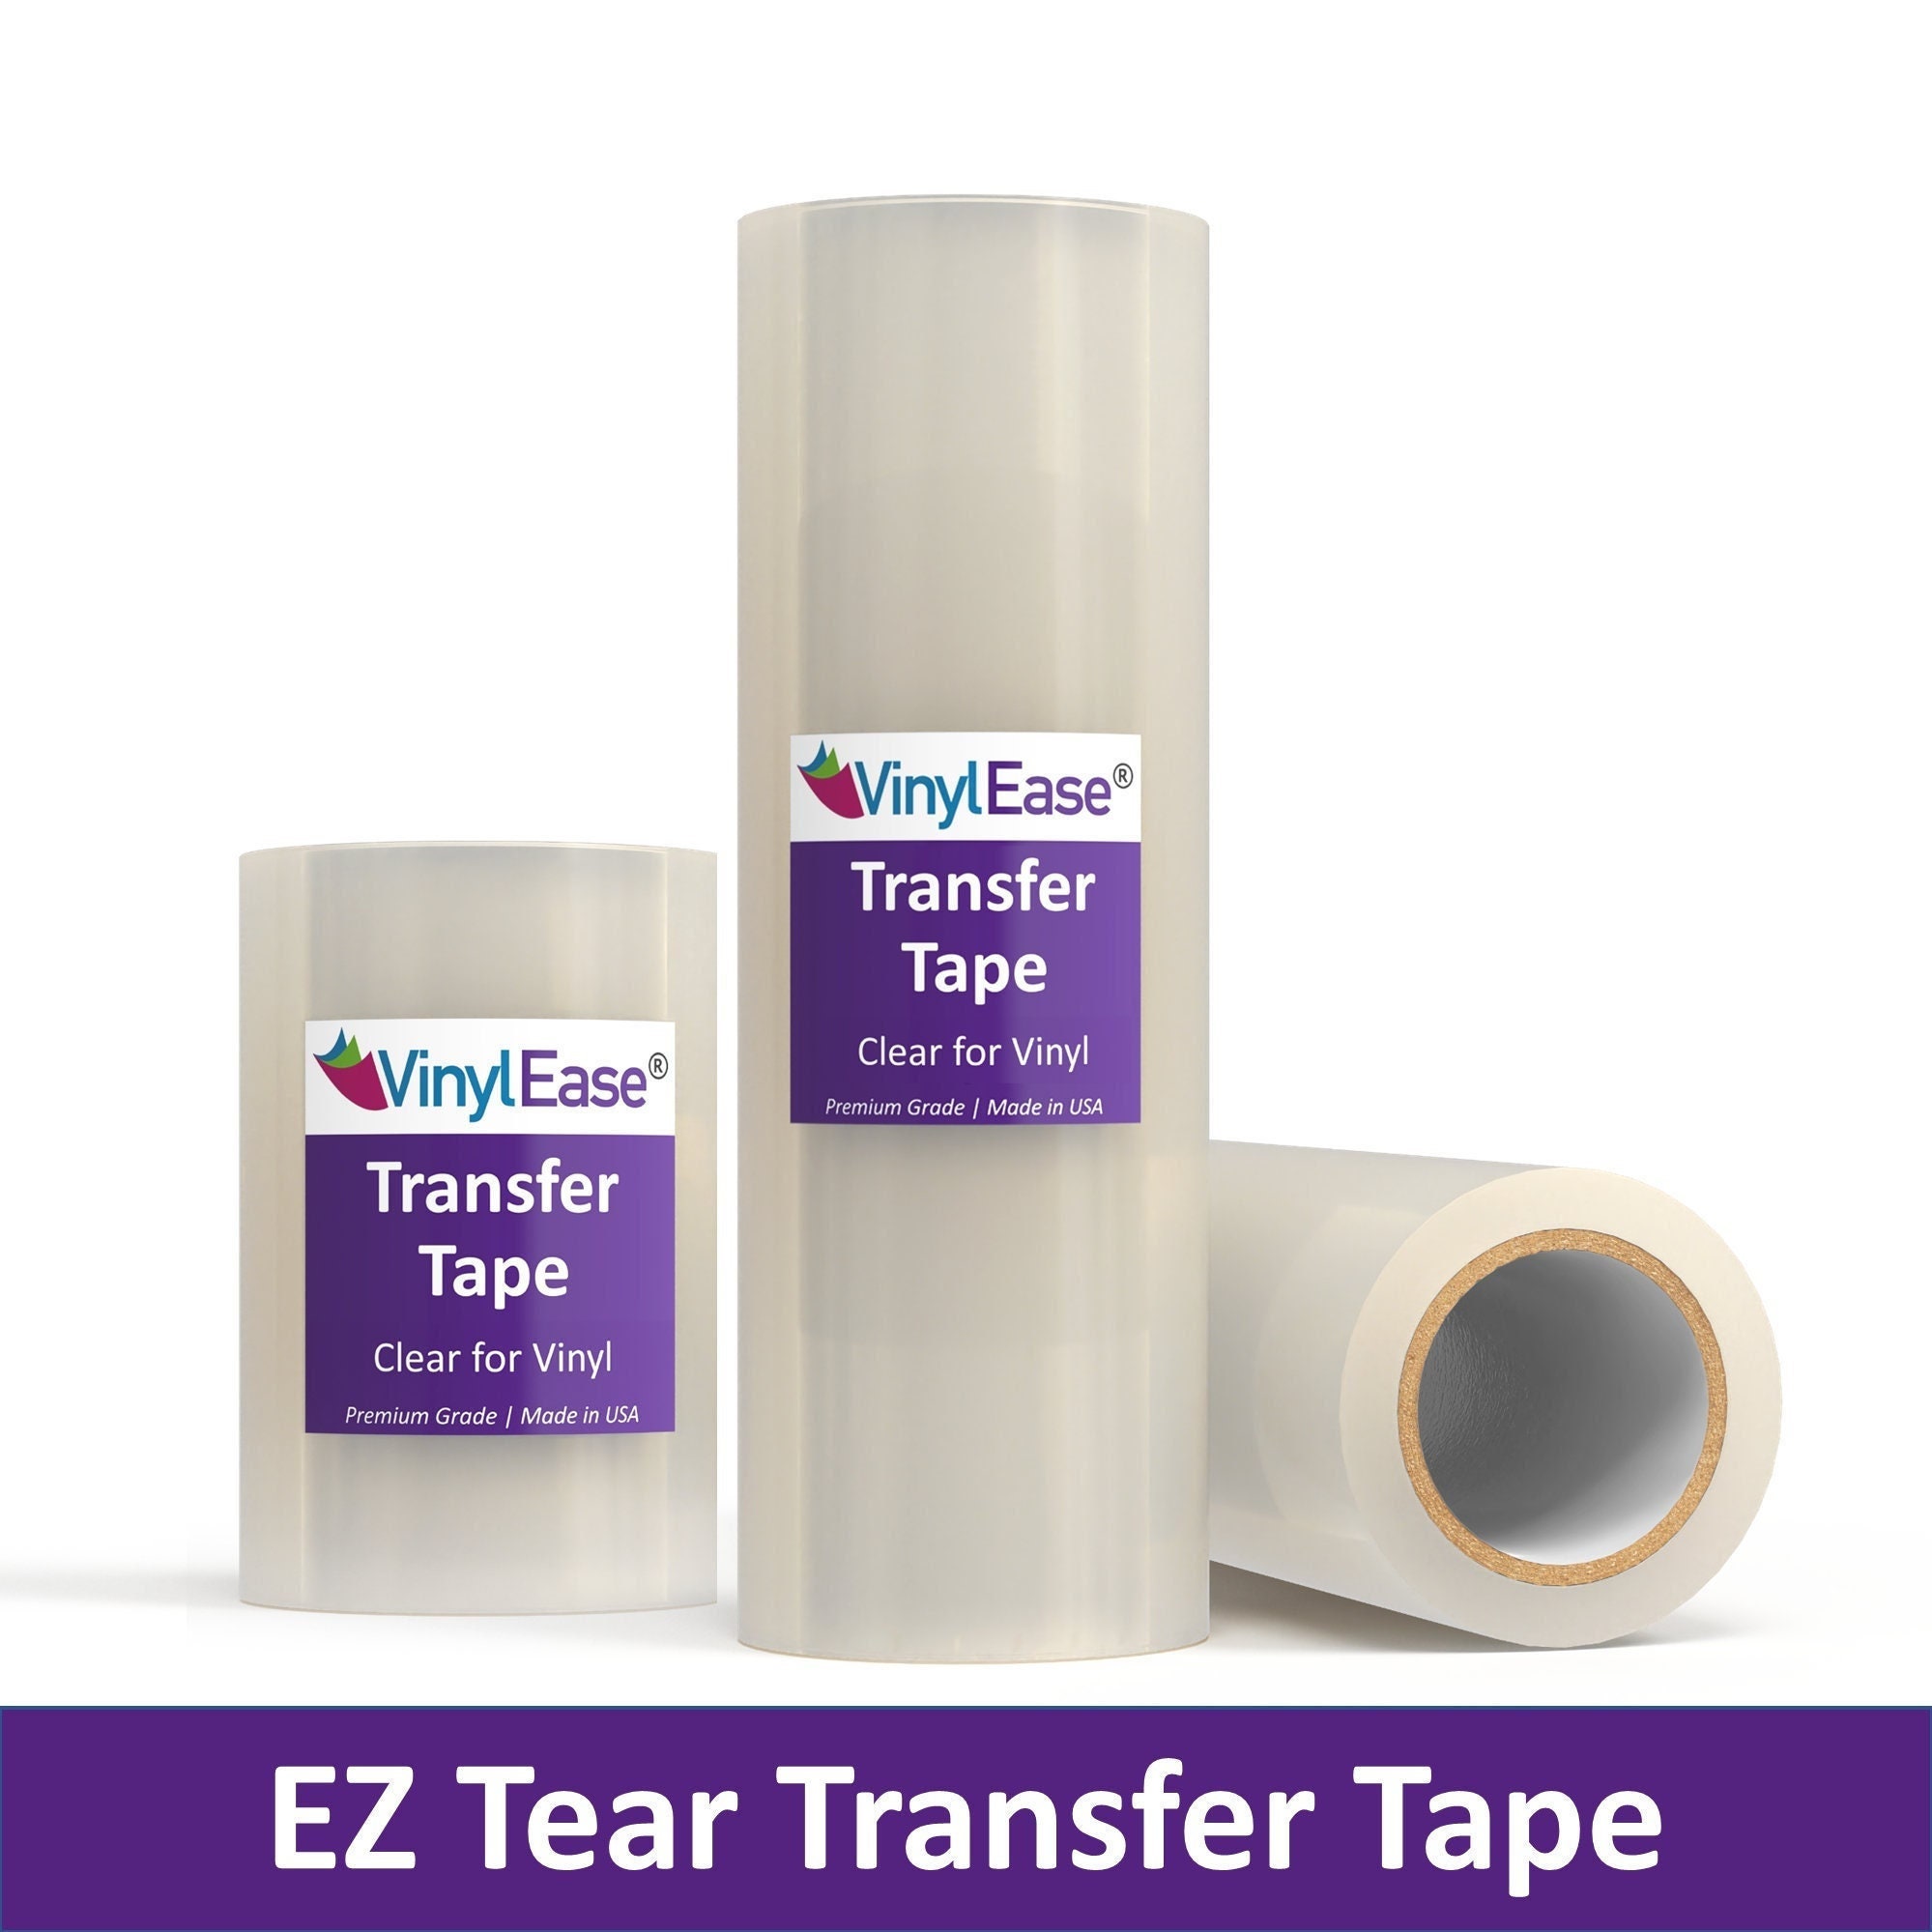 Heat Transfer Tape Transfer Tape Easy Mask HTV Transfer Sheet HTV Carrier  Sheet Siser Easy Mask Transfer Tape for HTV 